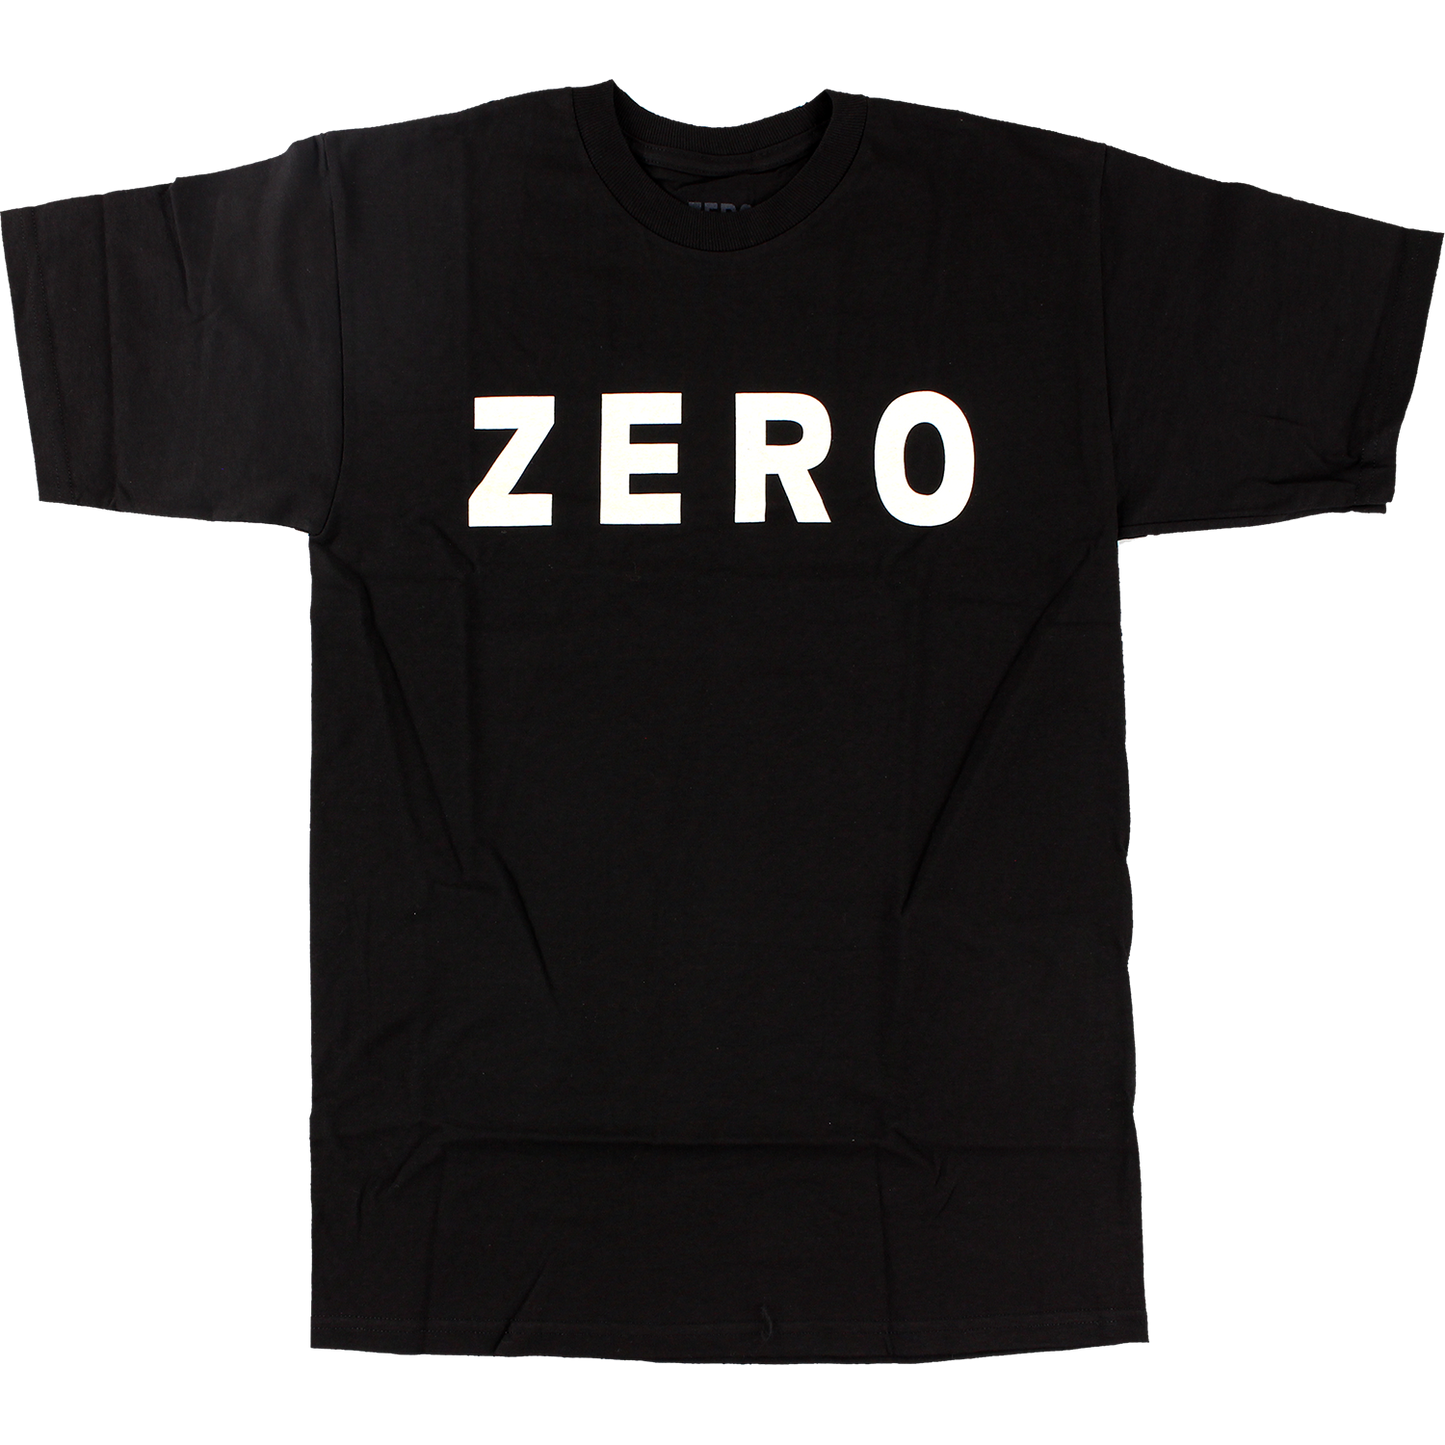 Zero Army Logo T-Shirt - Size: SMALL Black/White